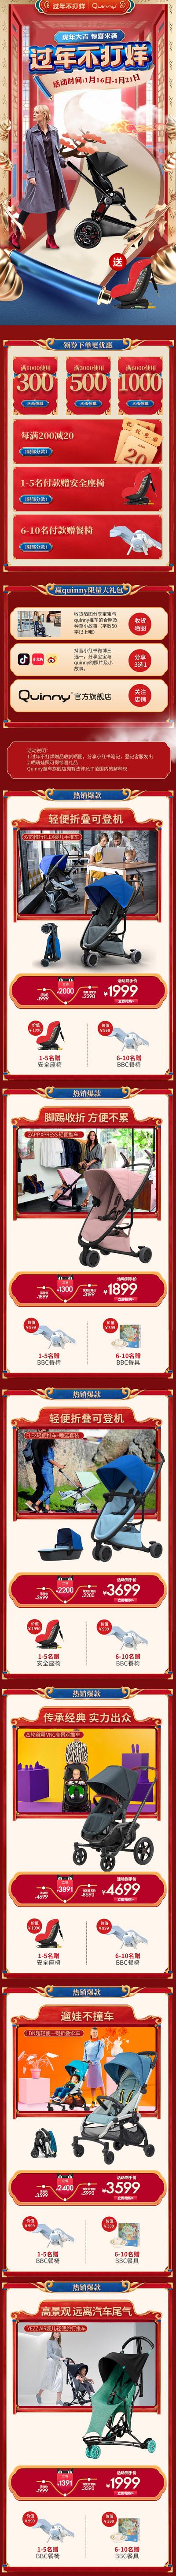 南门网 电商首页 淘宝首页 母婴用品 婴儿车 安全座椅 春节 促销 宣传